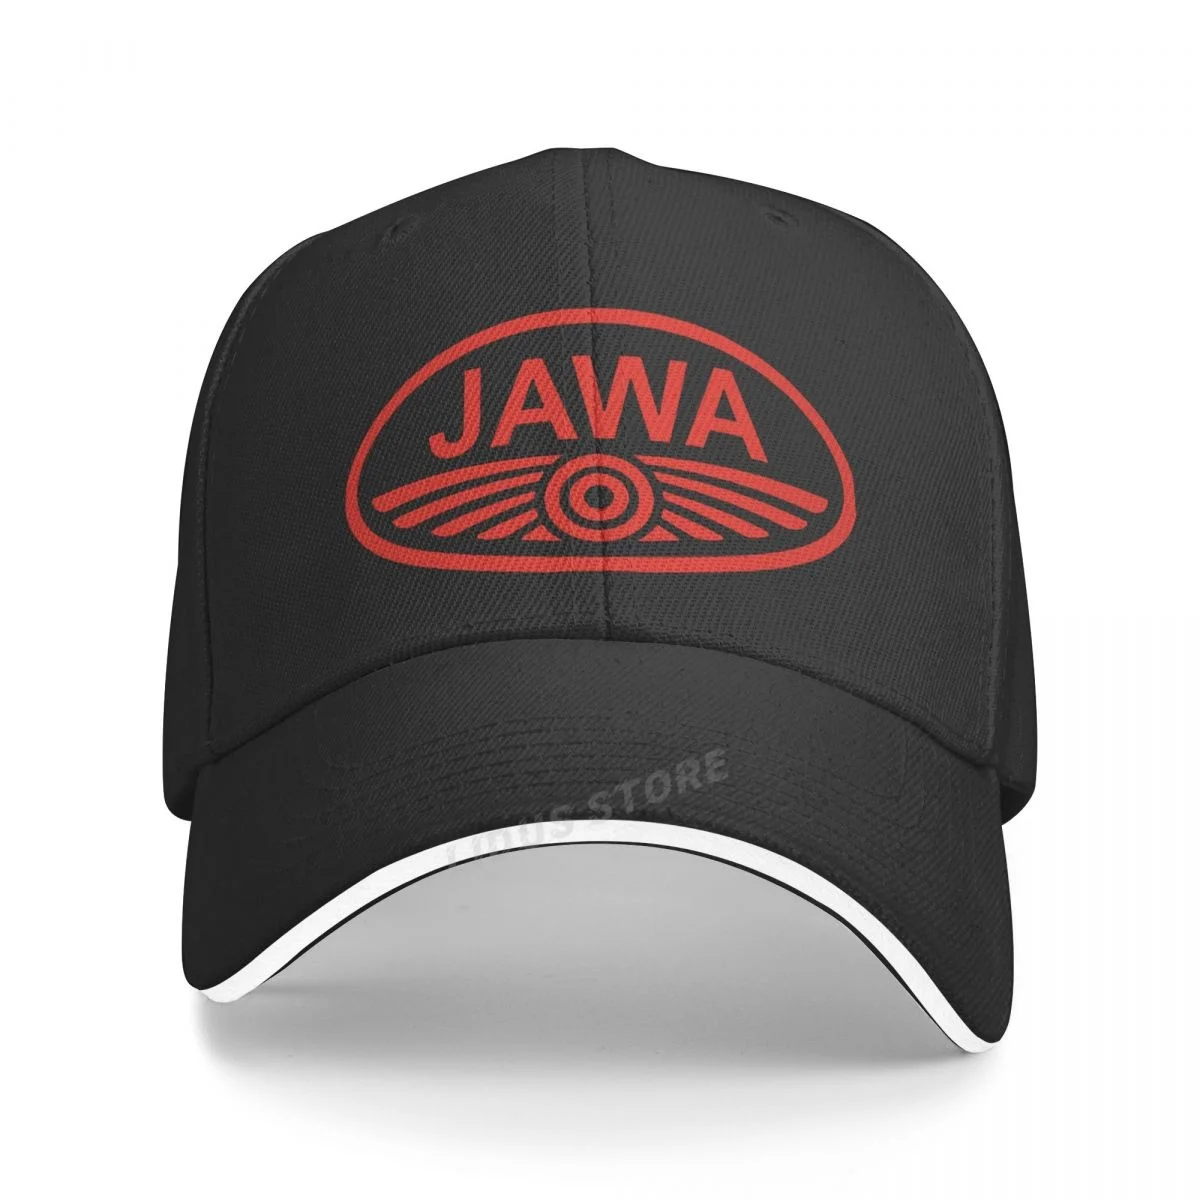 Fashion JAWA Motorcycle Baseball Cap Women And Men Cool Jawa Hat Boy Caps